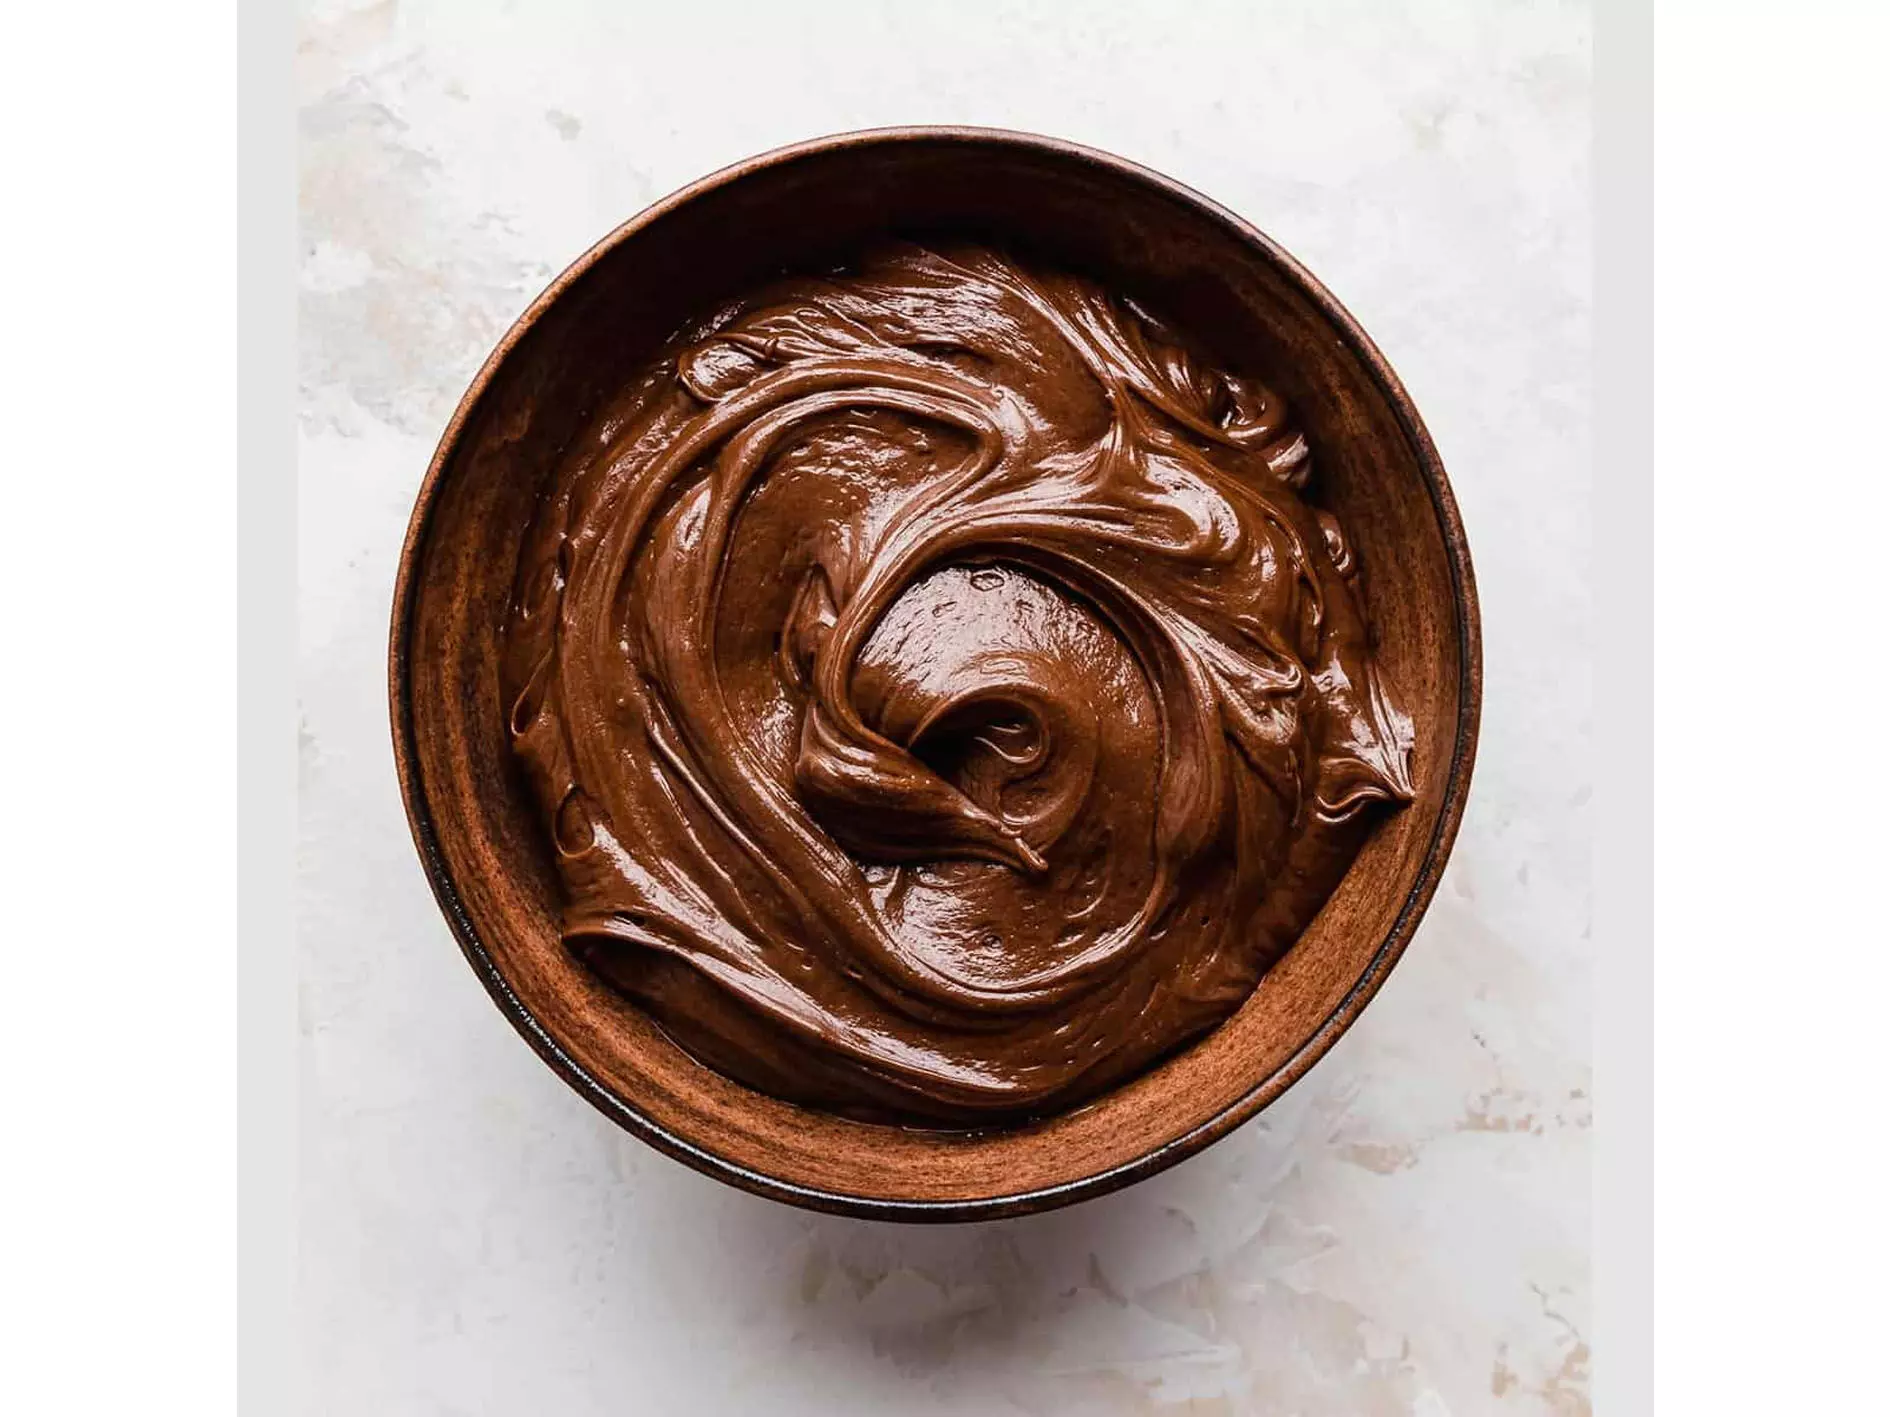 Homemade Nutella Recipe: घर पर ही बनाए बाहर से भी अच्छा नुटेला जानिए रेसिपी